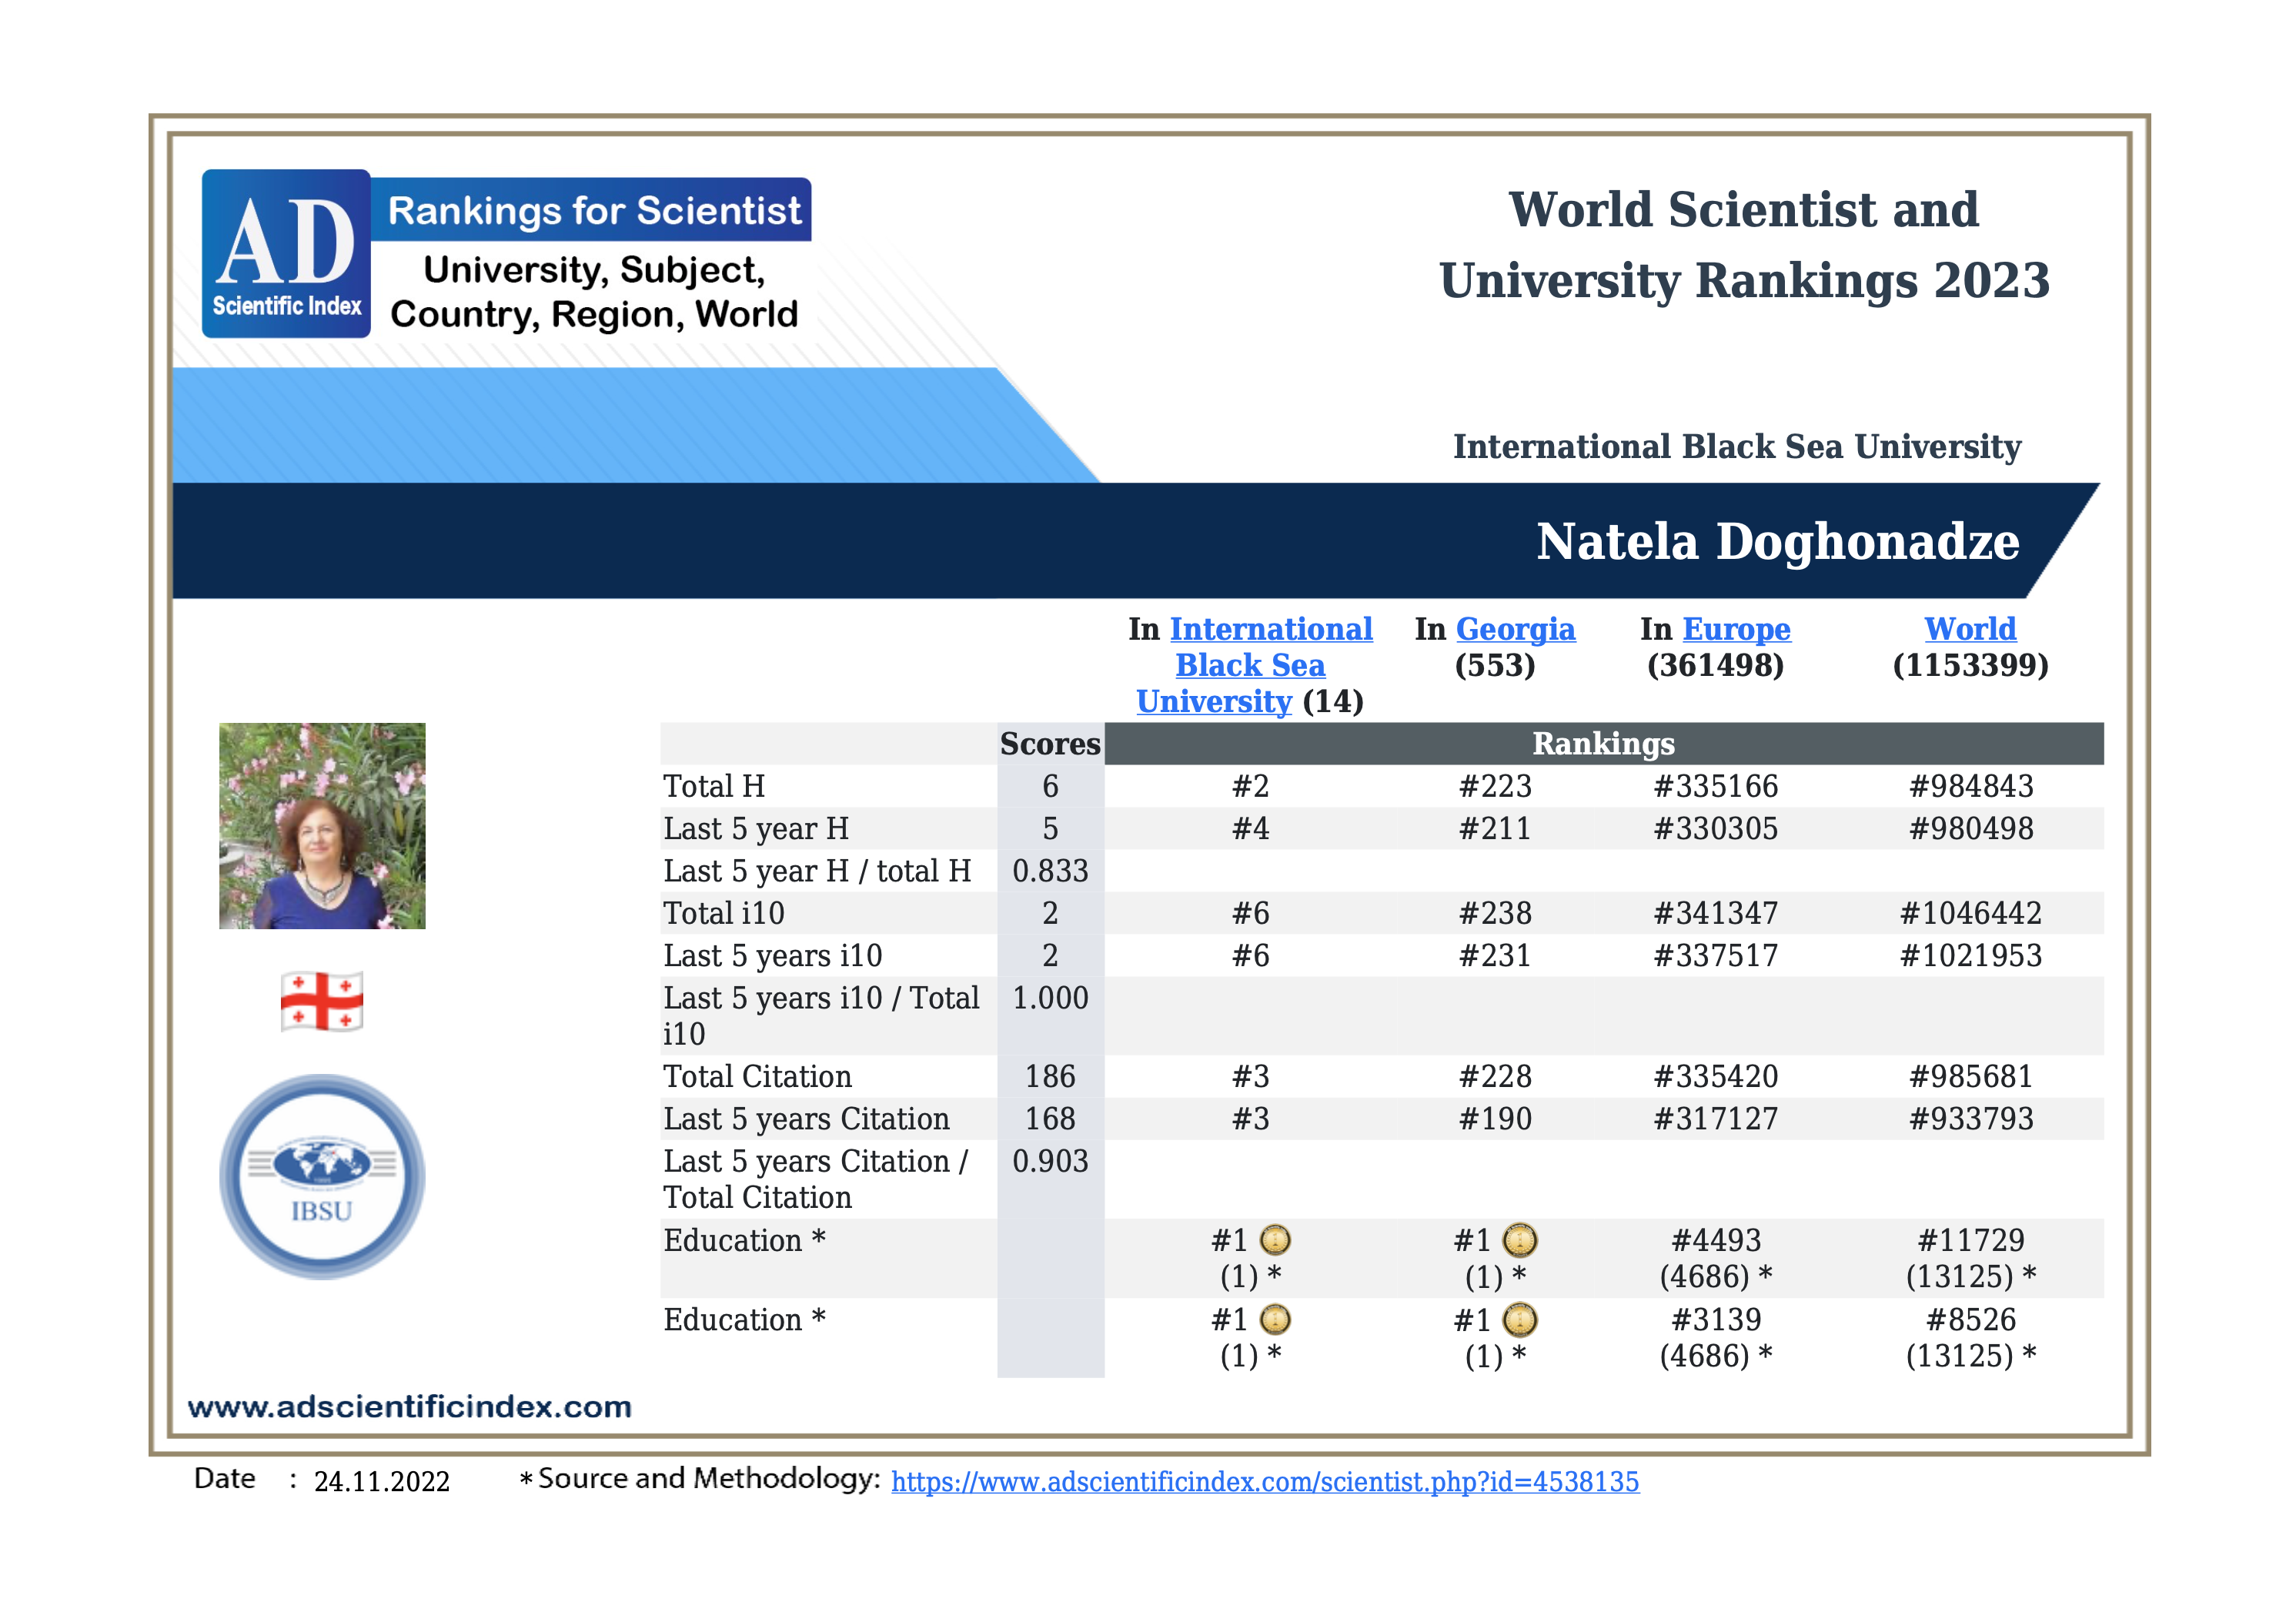 According to AD Scientific Index IBSU Professor, Natela Doghonadze is #1 in Georgia in the sphere of Education